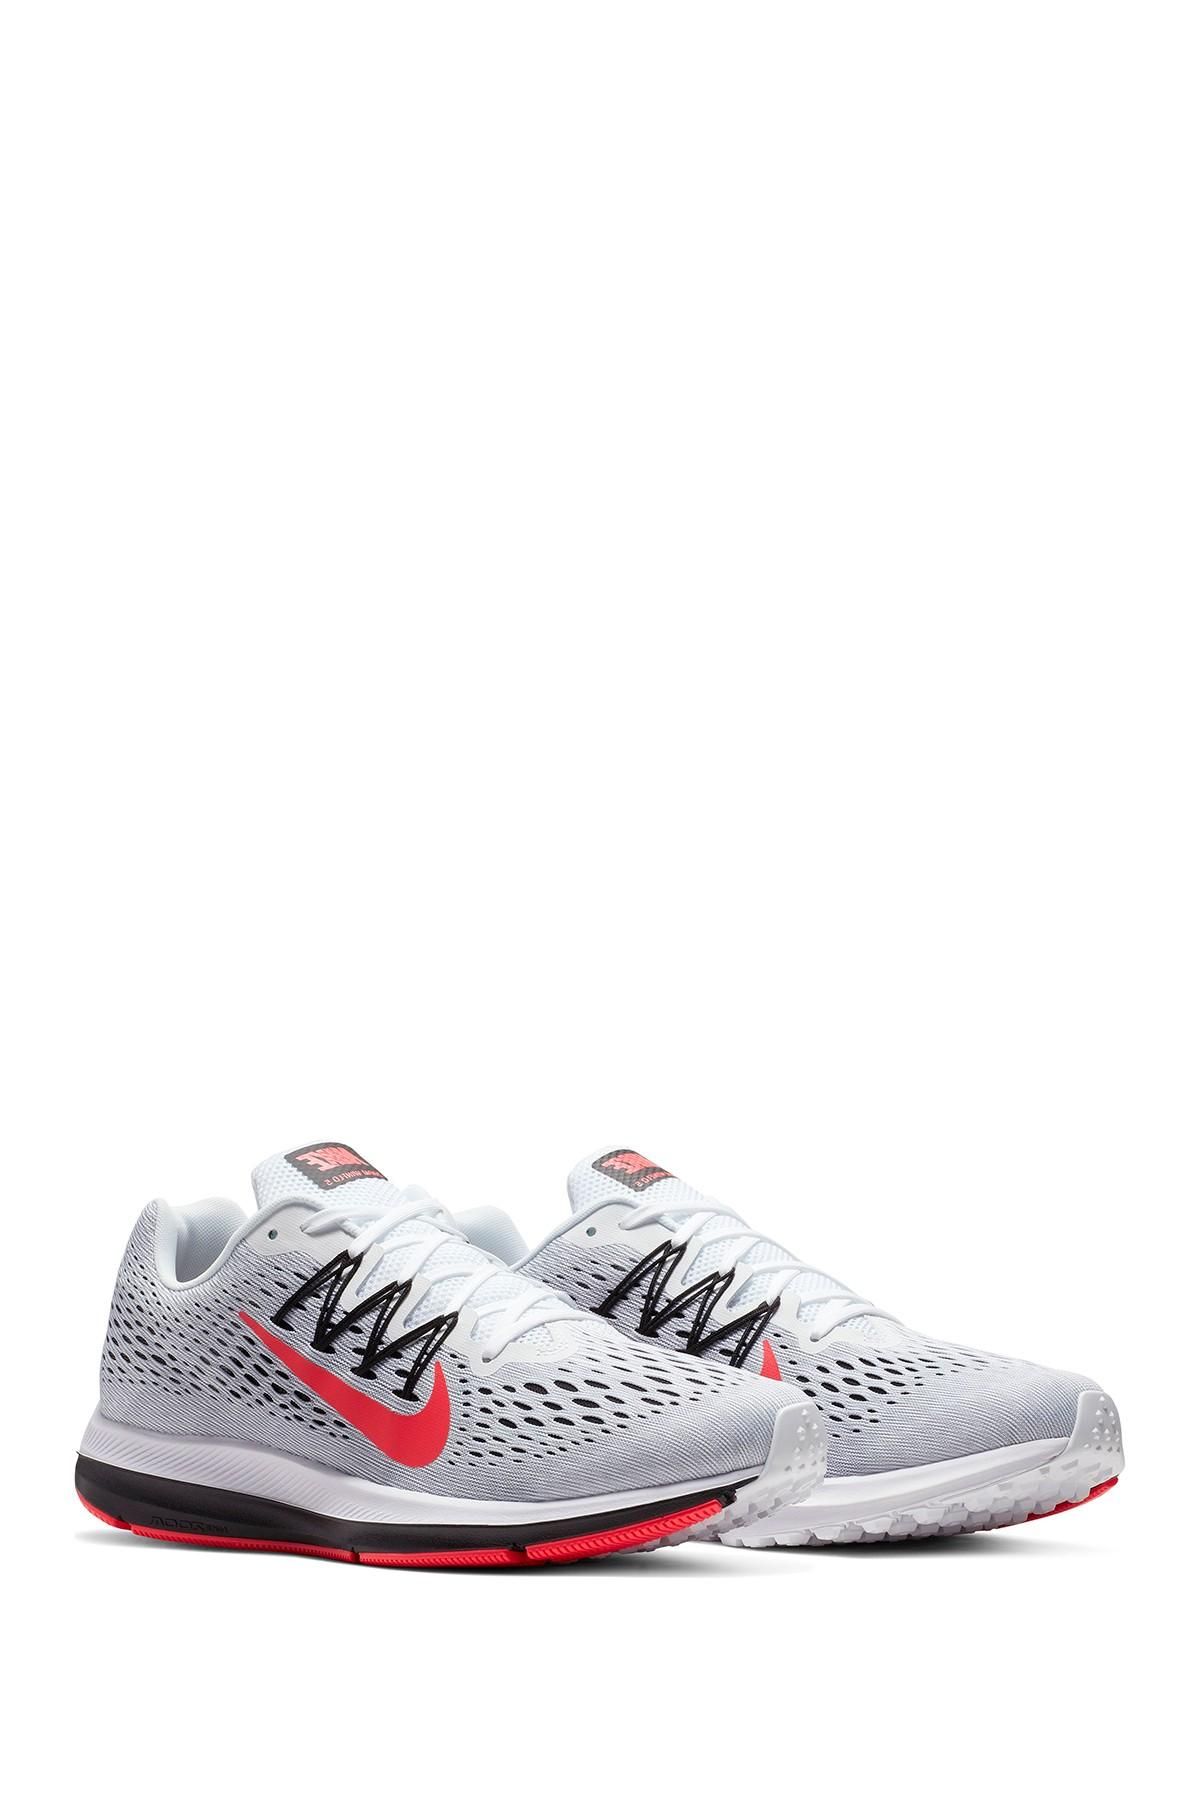 Nike Zoom Winflo 5 Sneaker in White for Men - Lyst